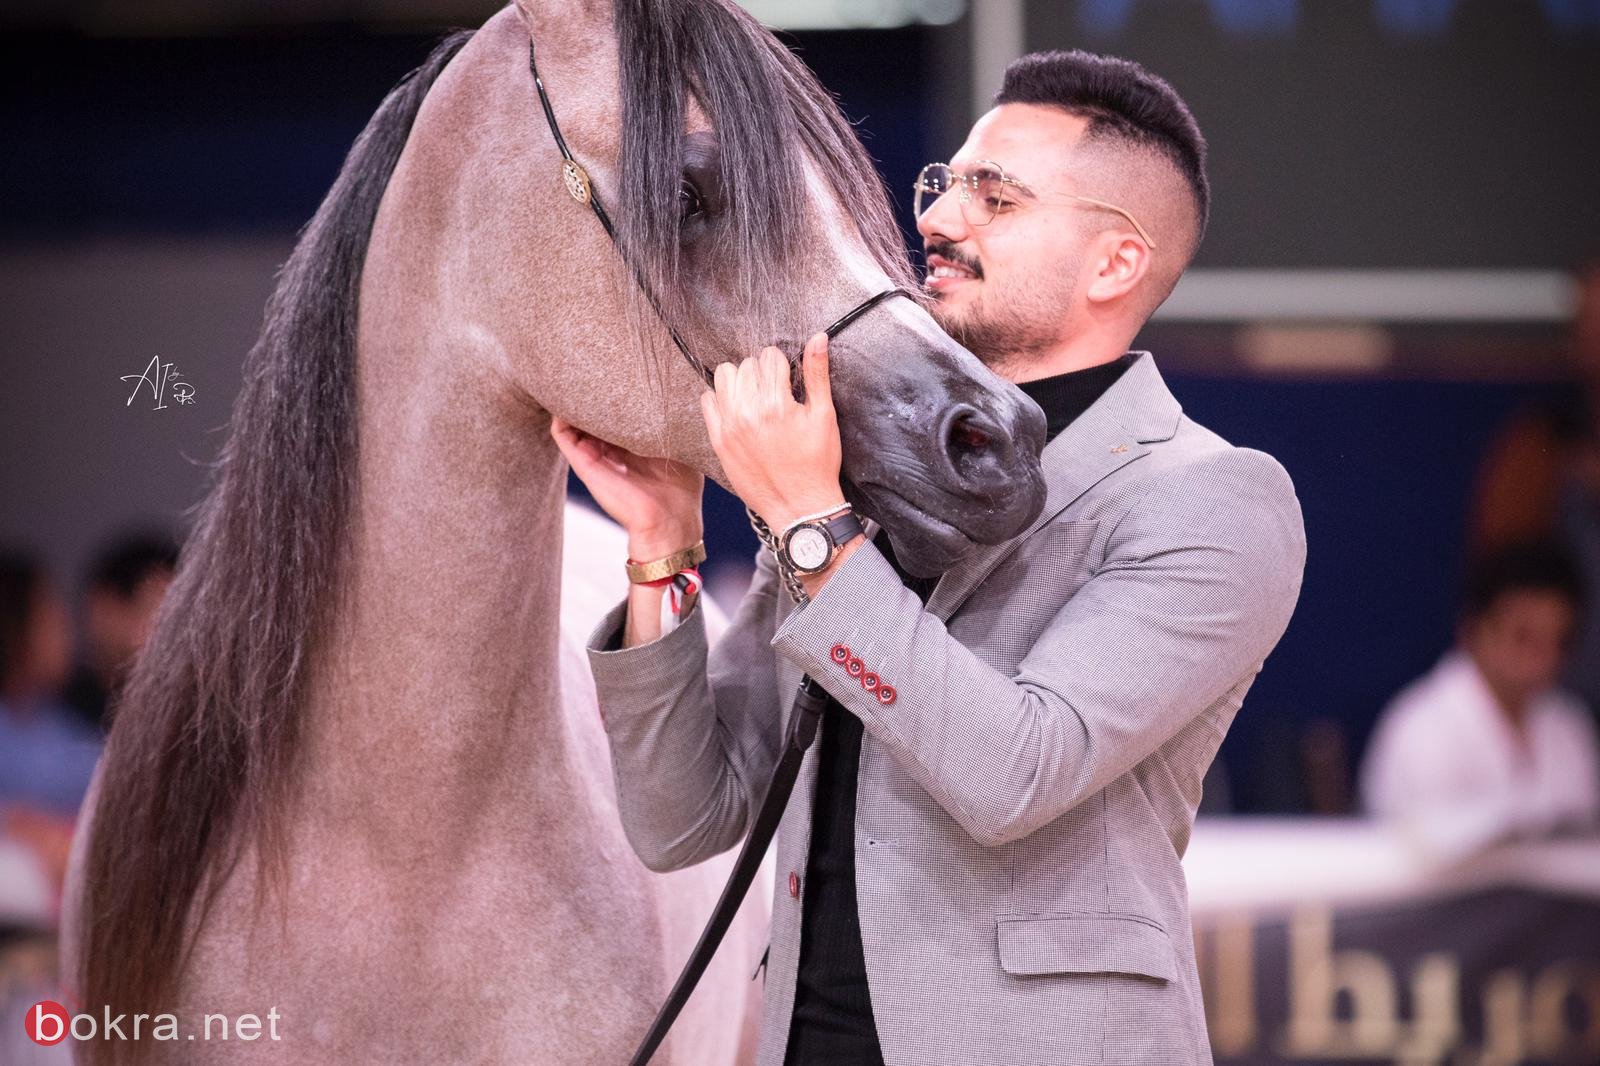 خيول عربية من الناصرة في مسابقات عالمية ورئيس البلدية يبارك لمربي الخيول محمد باسم الشيخ سليمان-11